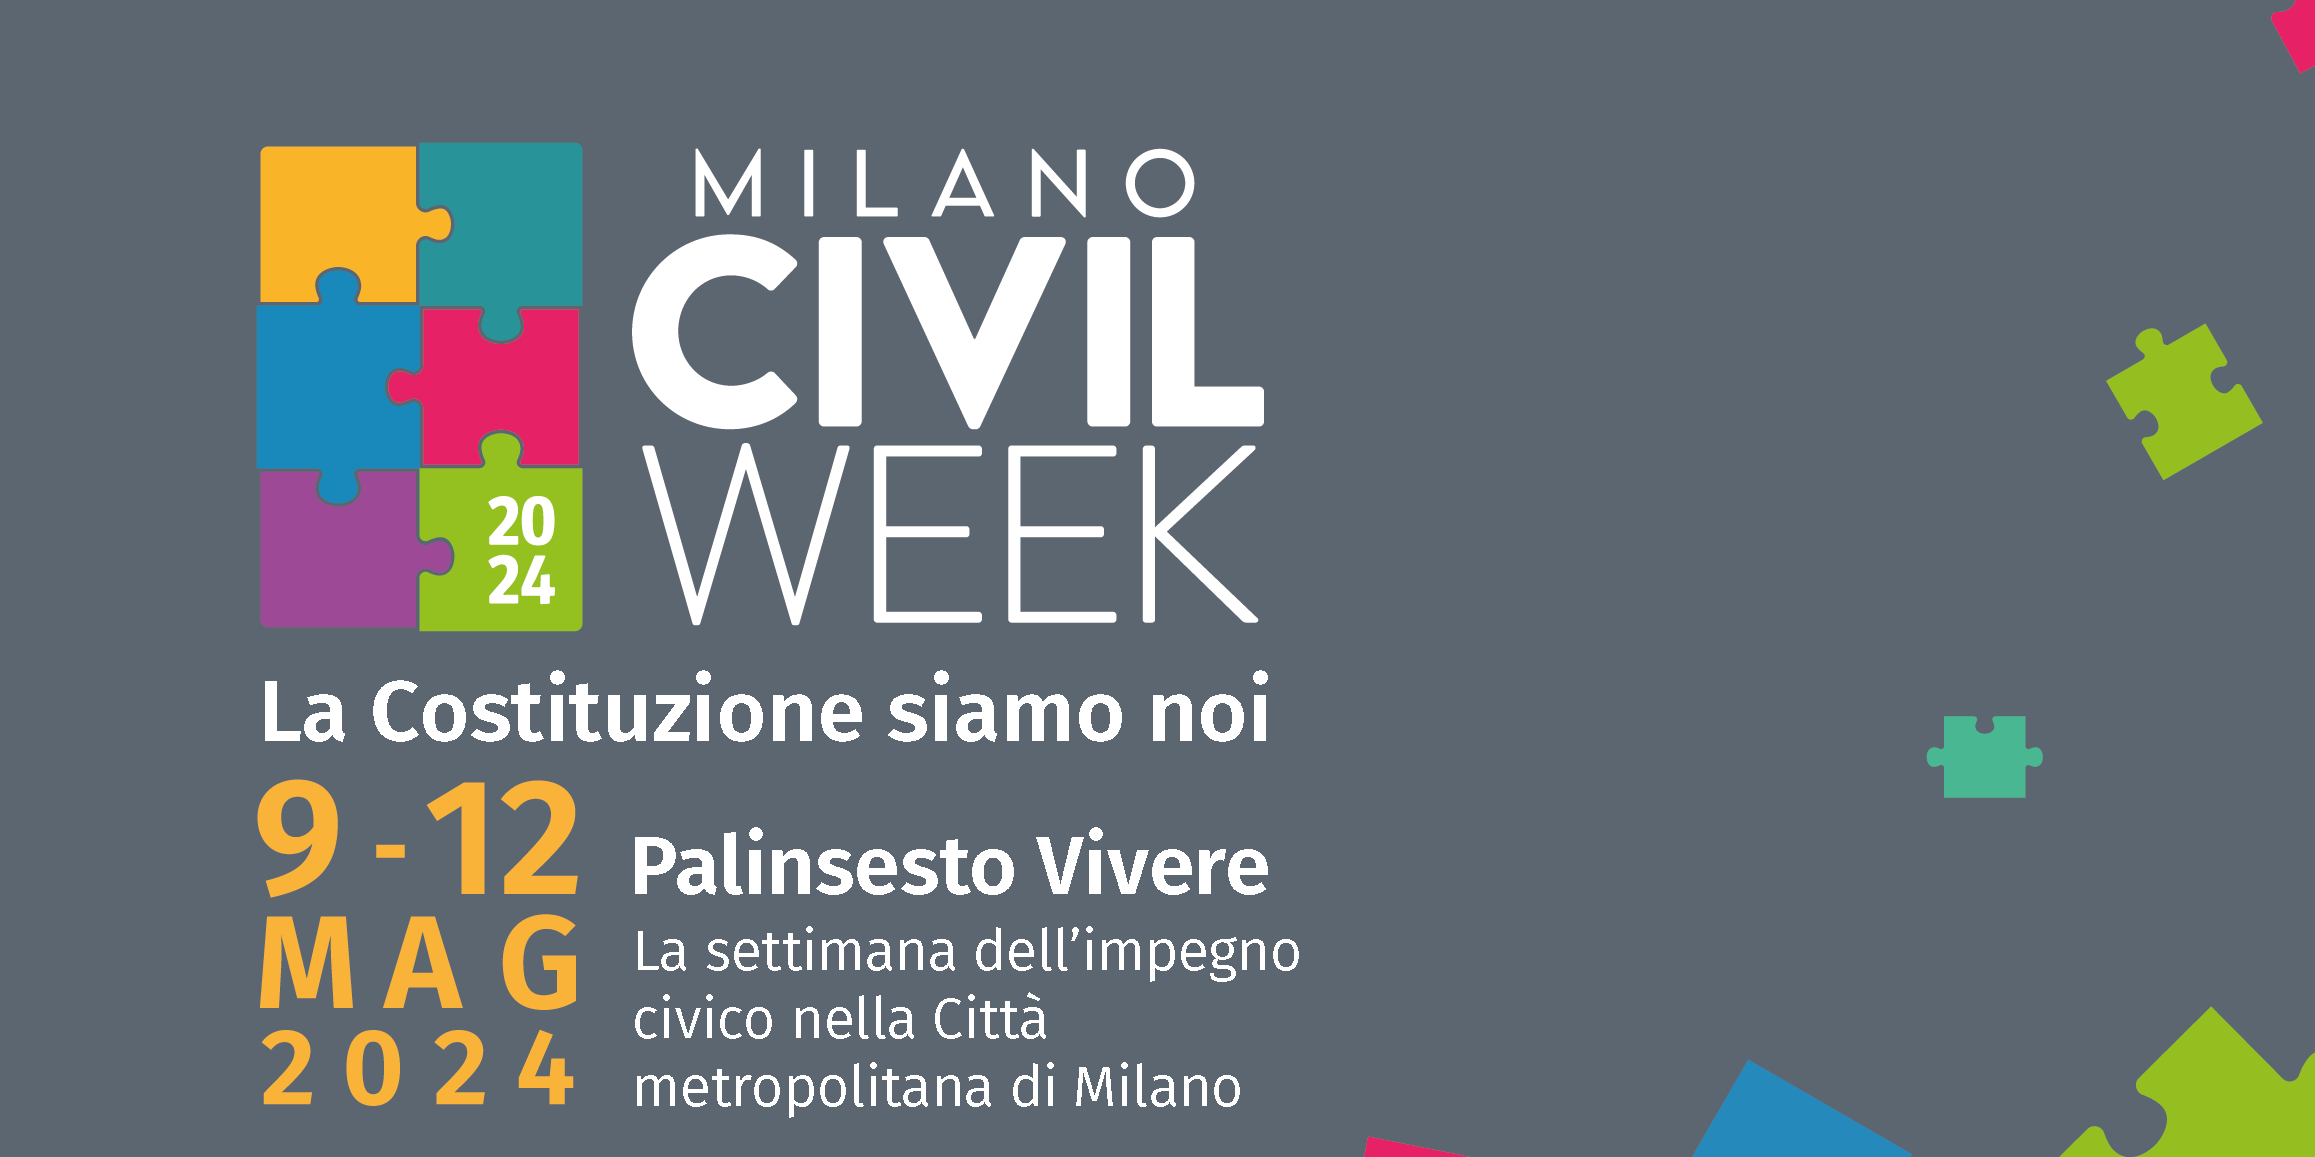 Il Centro di Psicosintesi di Milano partecipa a Milano Civil Week 2024